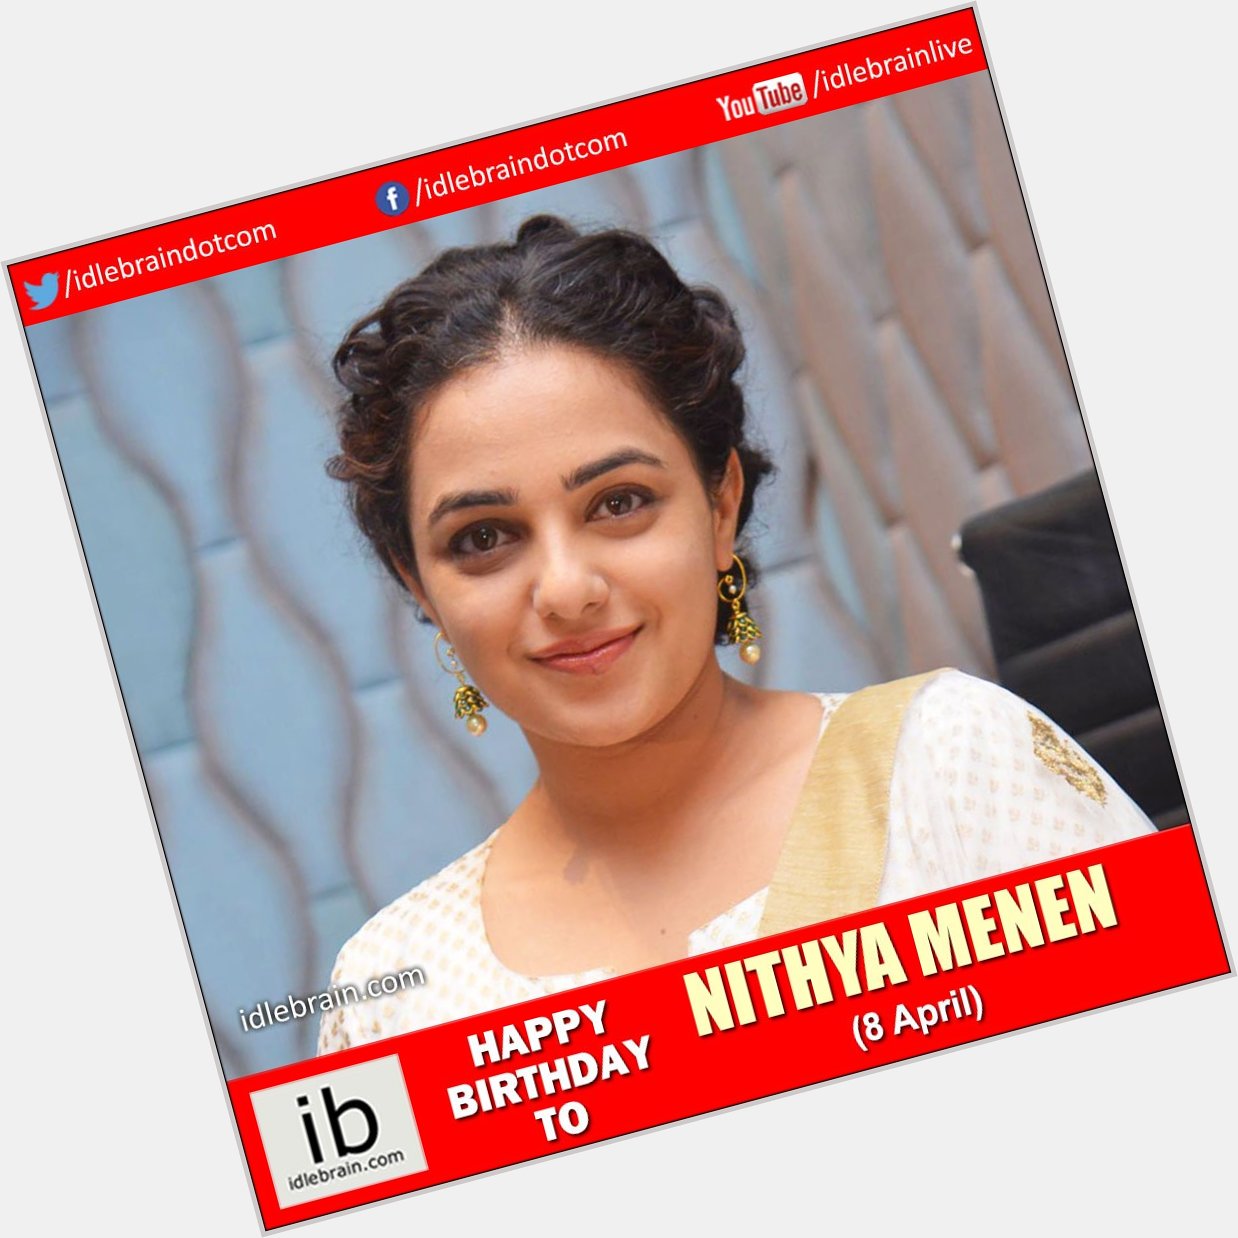 Happy Birthday to Nithya Menen (8 April) -  